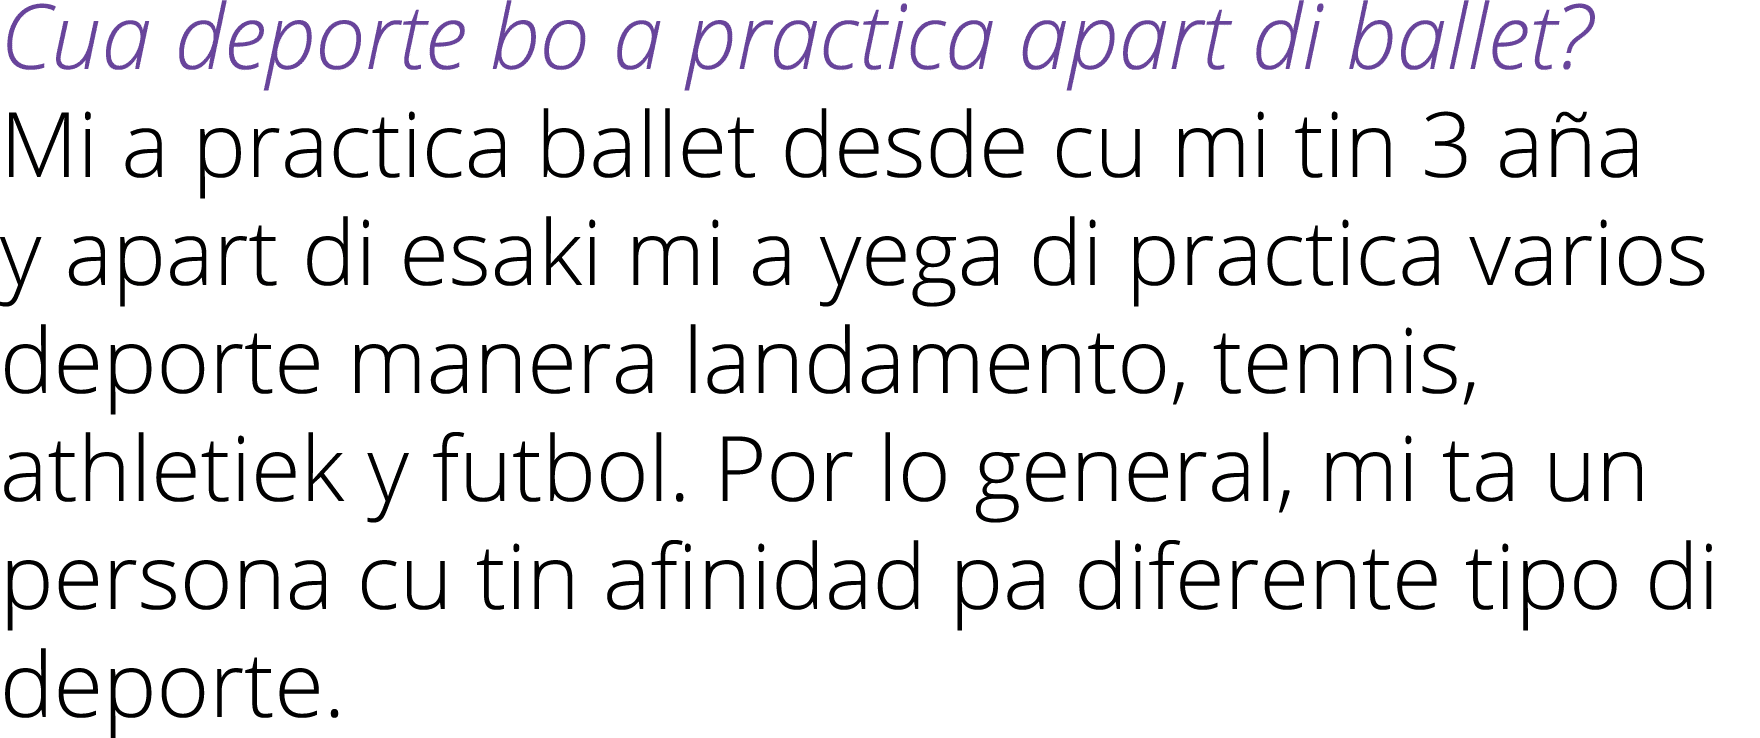 Cua deporte bo a practica apart di ballet? Mi a practica ballet desde cu mi tin 3 a a y apart di esaki mi a yega di p...